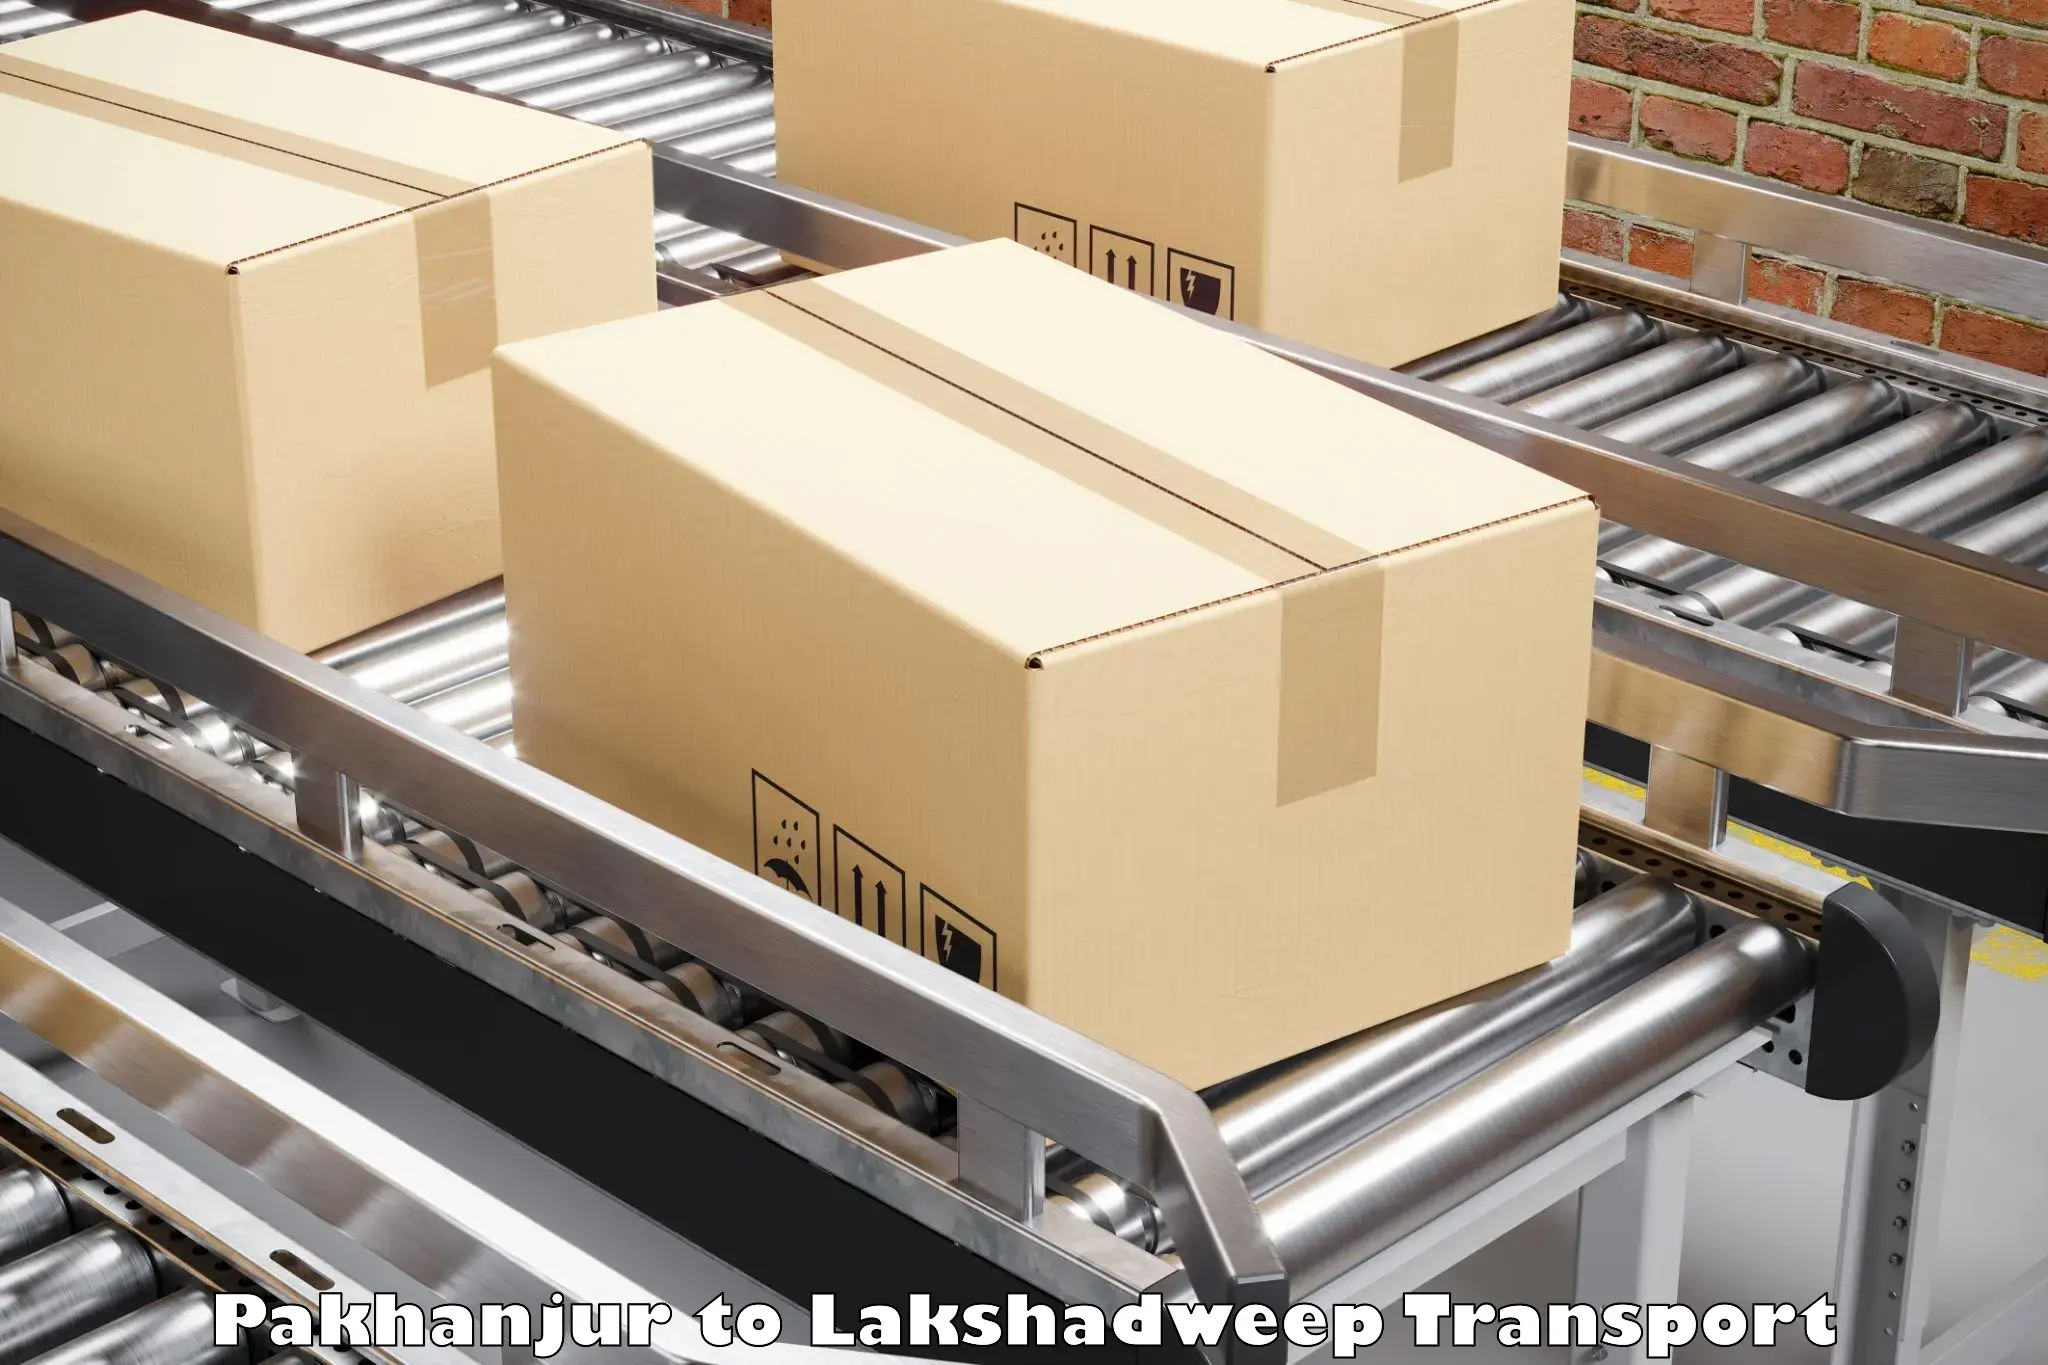 Nearest transport service Pakhanjur to Lakshadweep